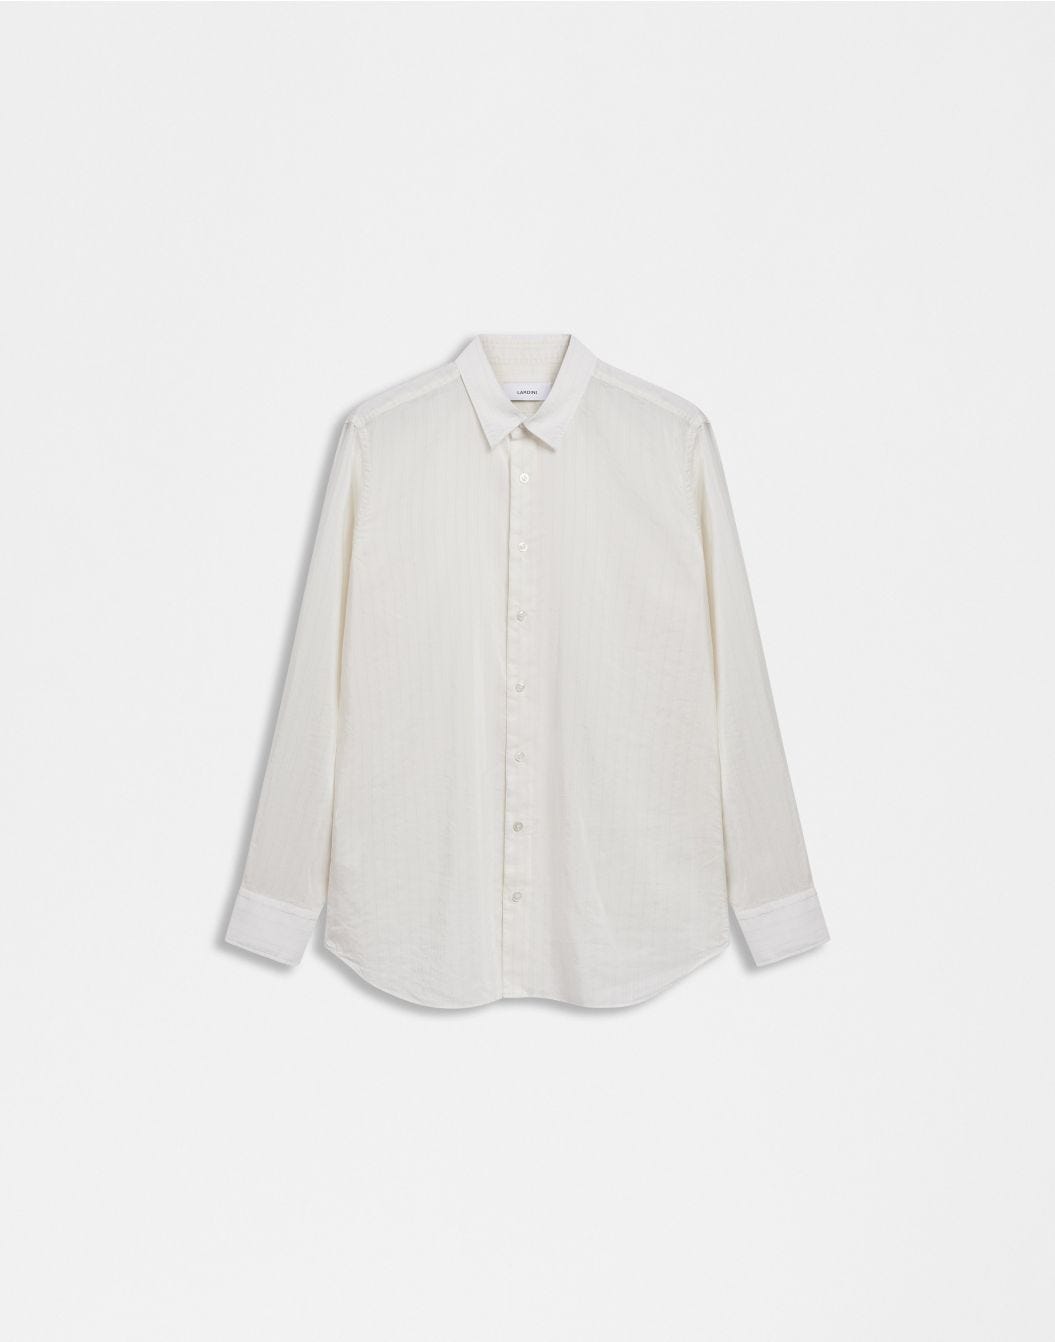 Chemise blanche avec col italien en tissu voile